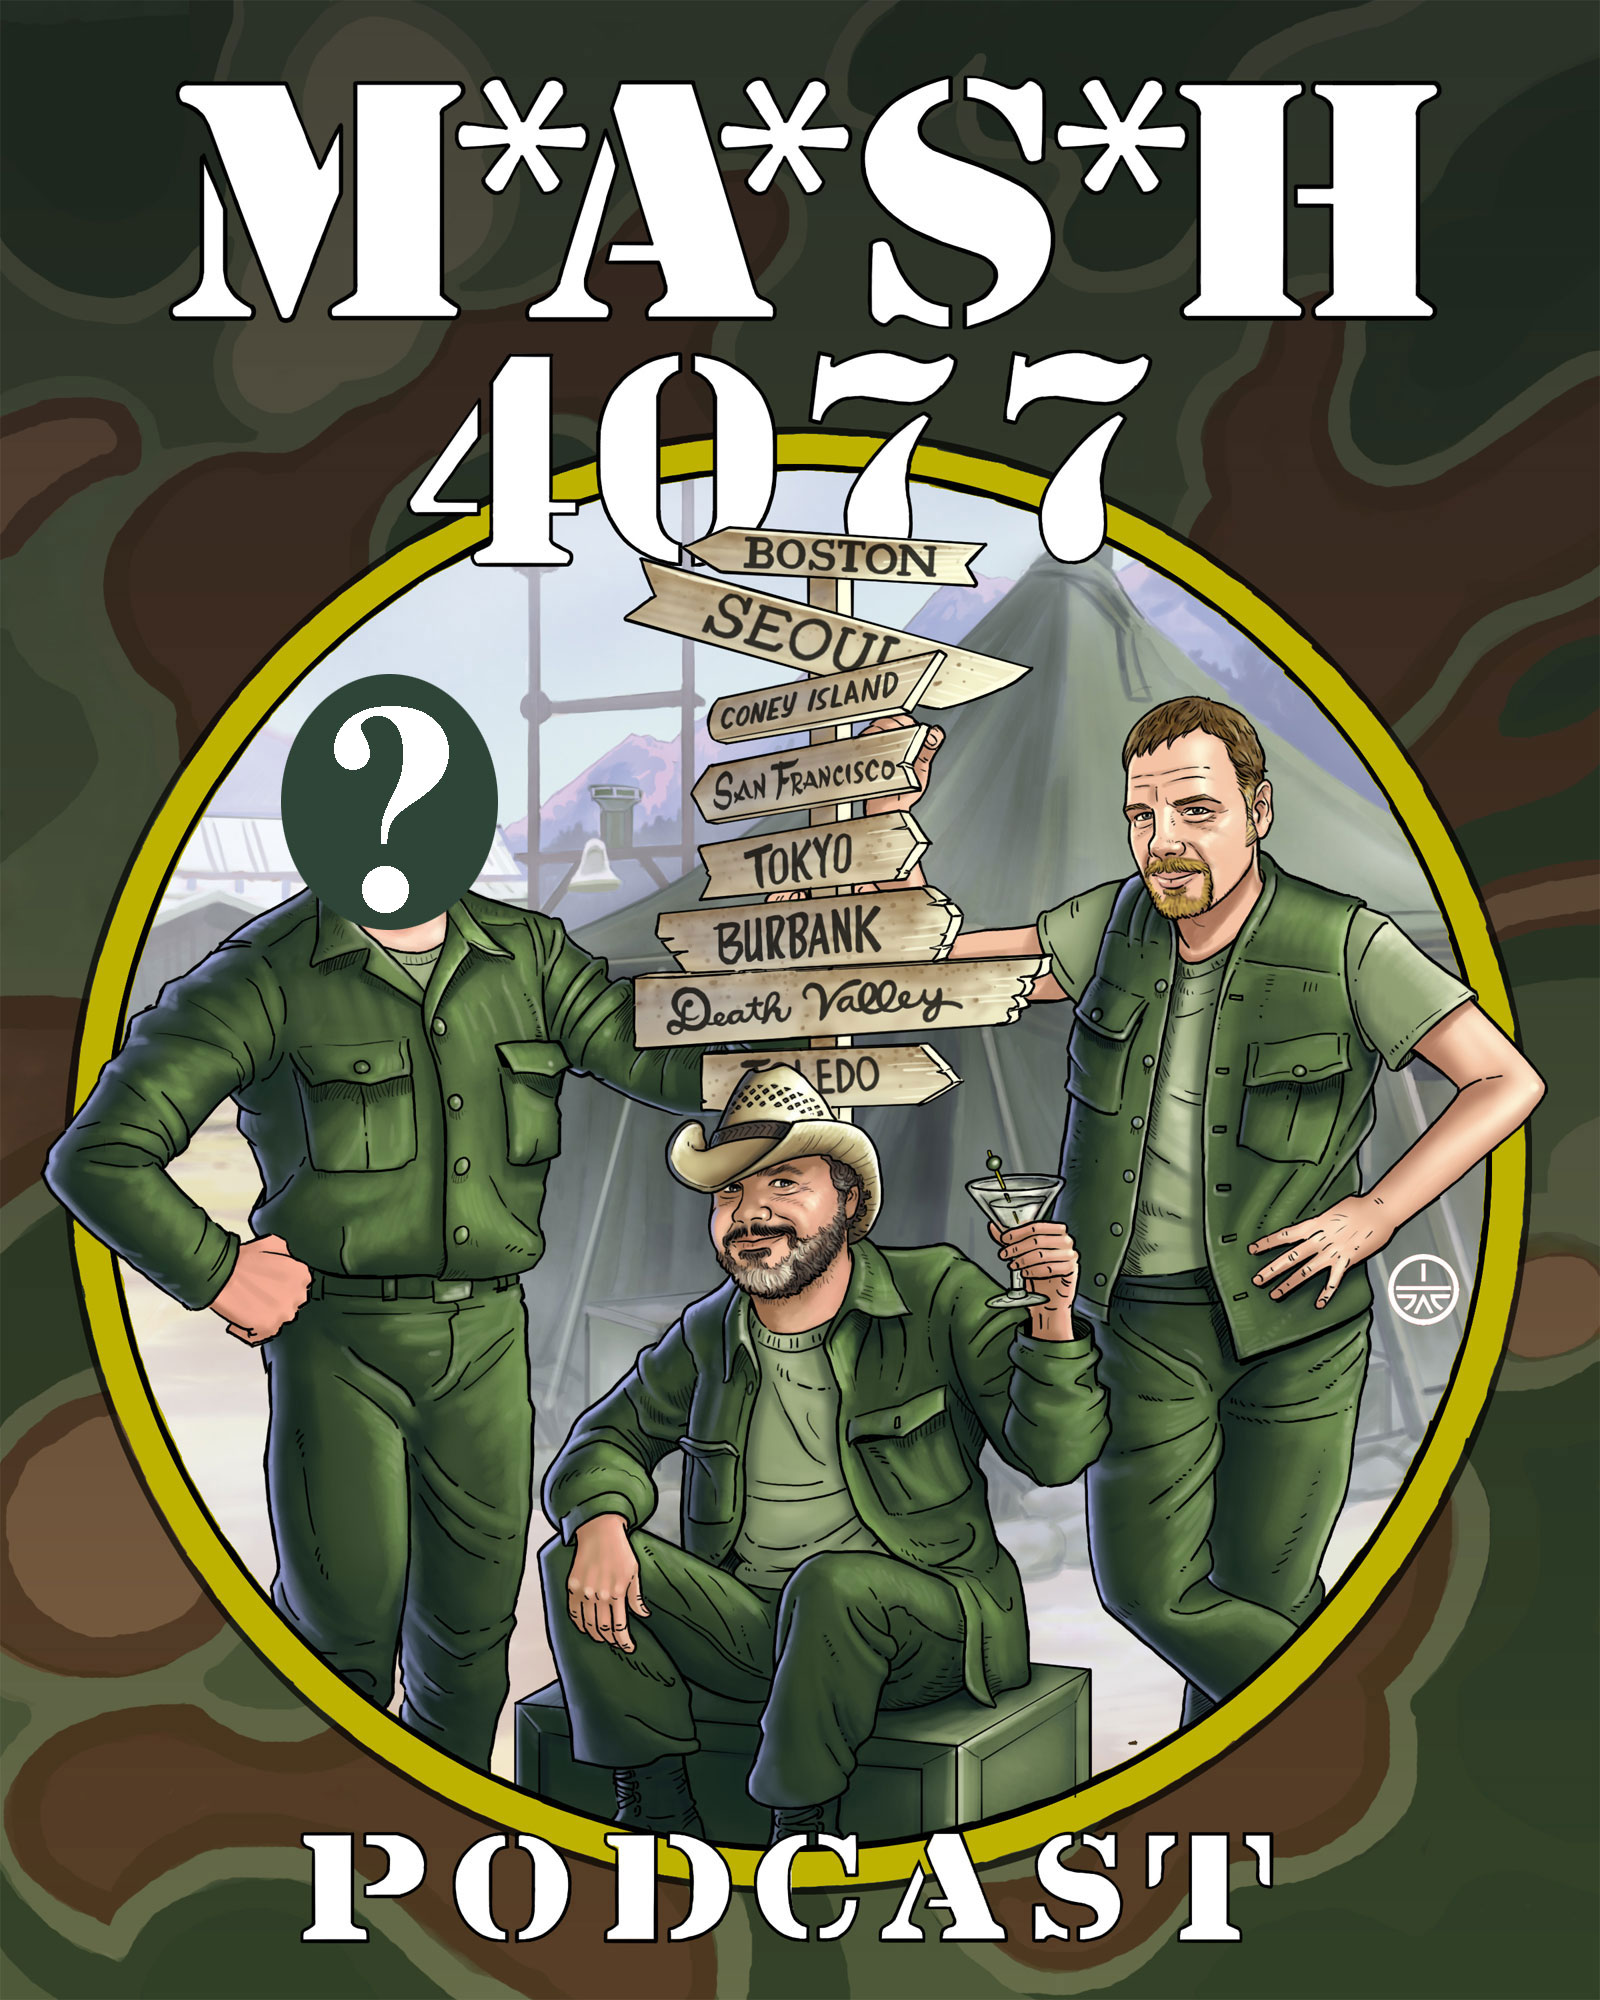 MASH 4077 Podcast Episode 128